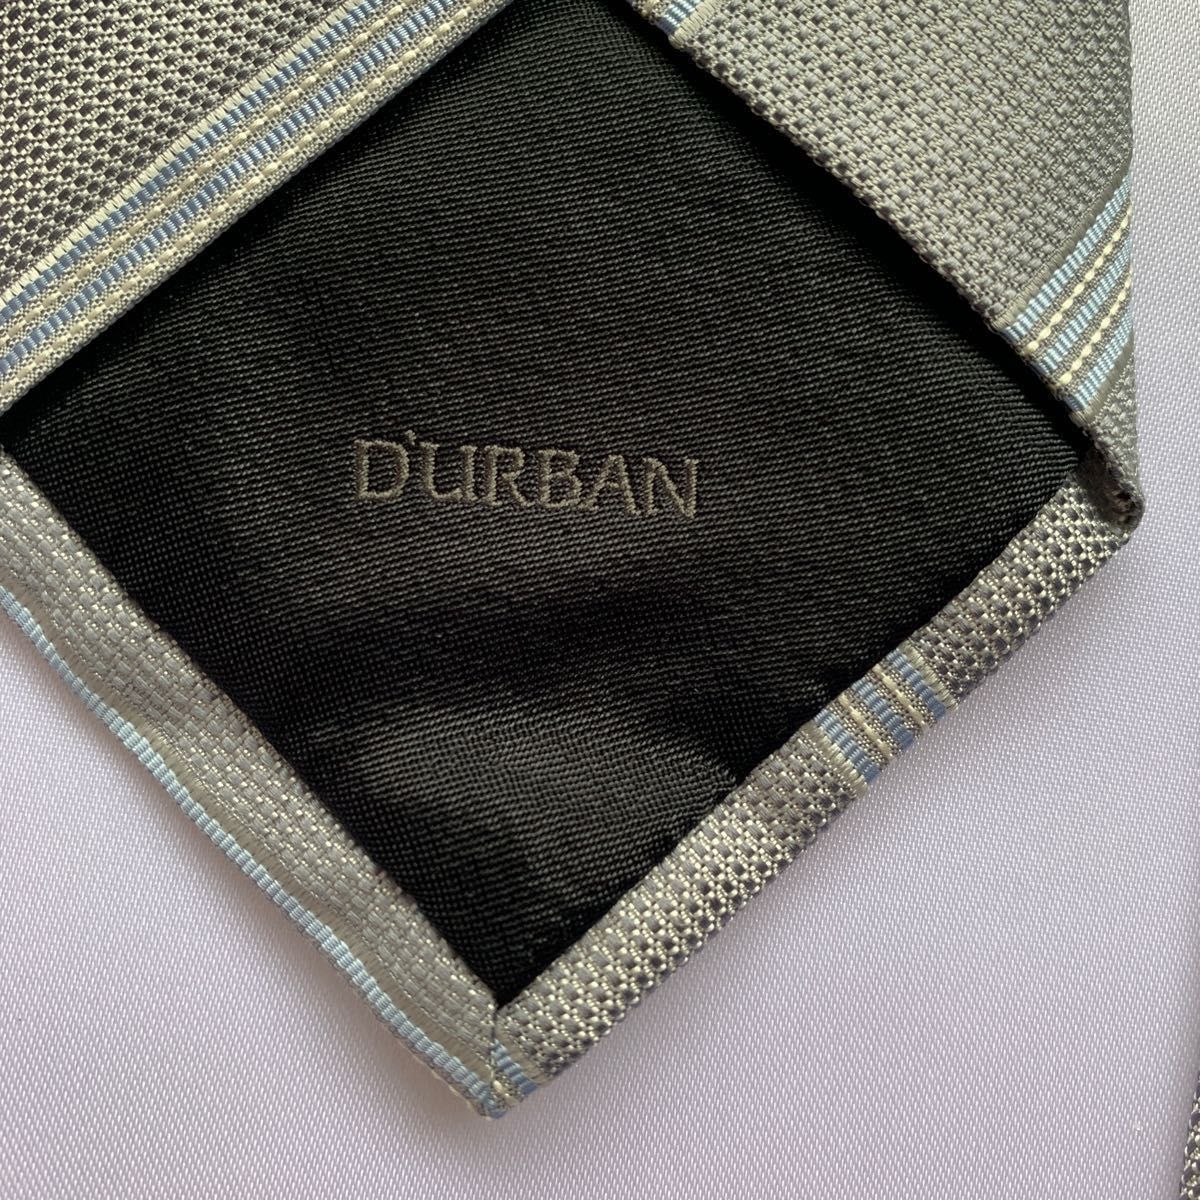 ダーバン ネクタイ　DURBANネクタイ　イタリア製ネクタイ　絹100% レジメンタルネクタイ　ビジネス 